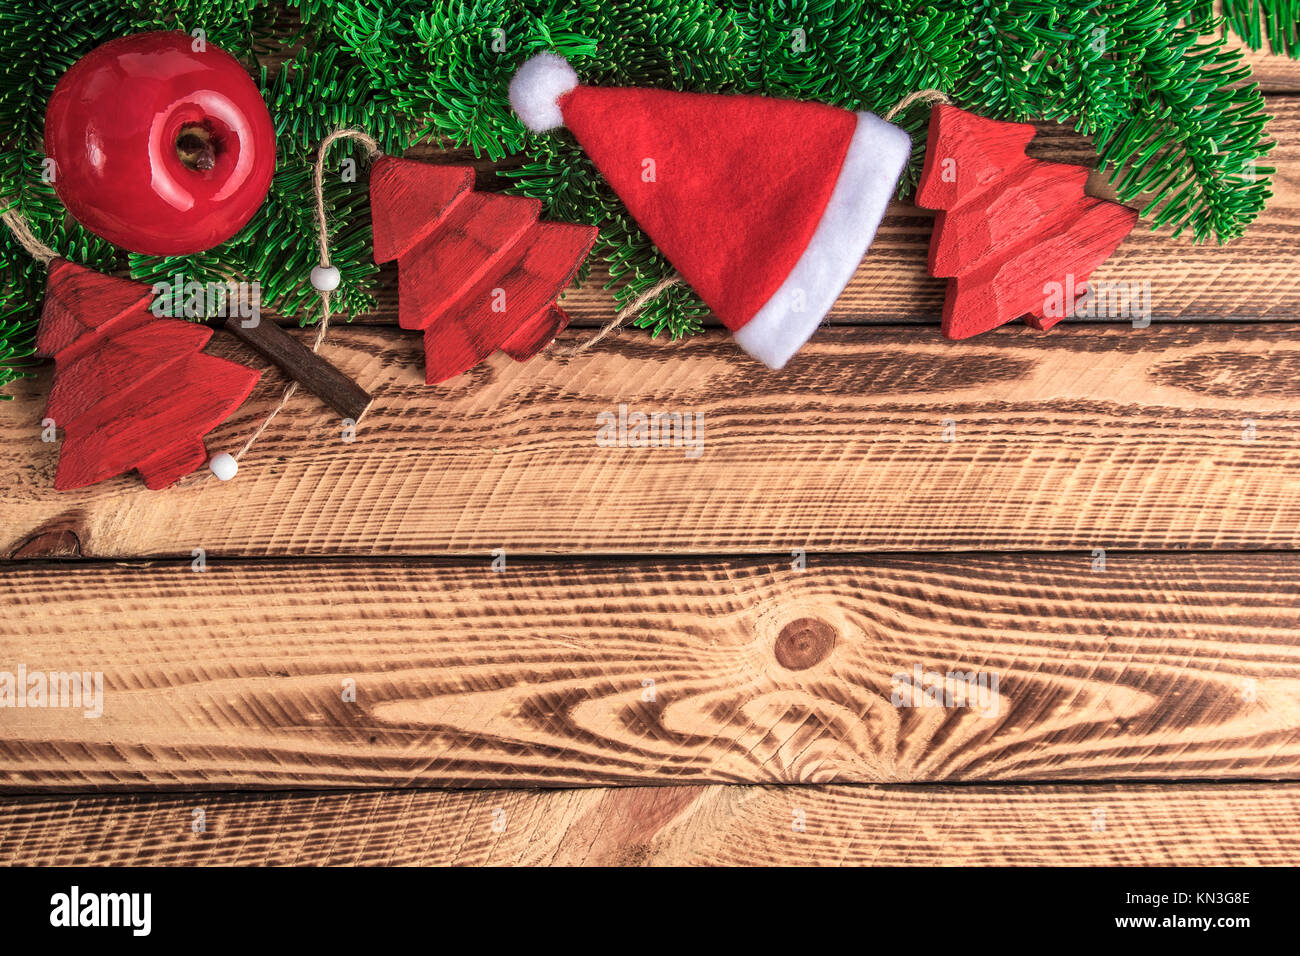 21x15 m fotografía fondo Navidad decoración vintage madera pared dulces  regalos árbol de Navidad fondos para estudio fotográfico W4823   Amazones Electrónica